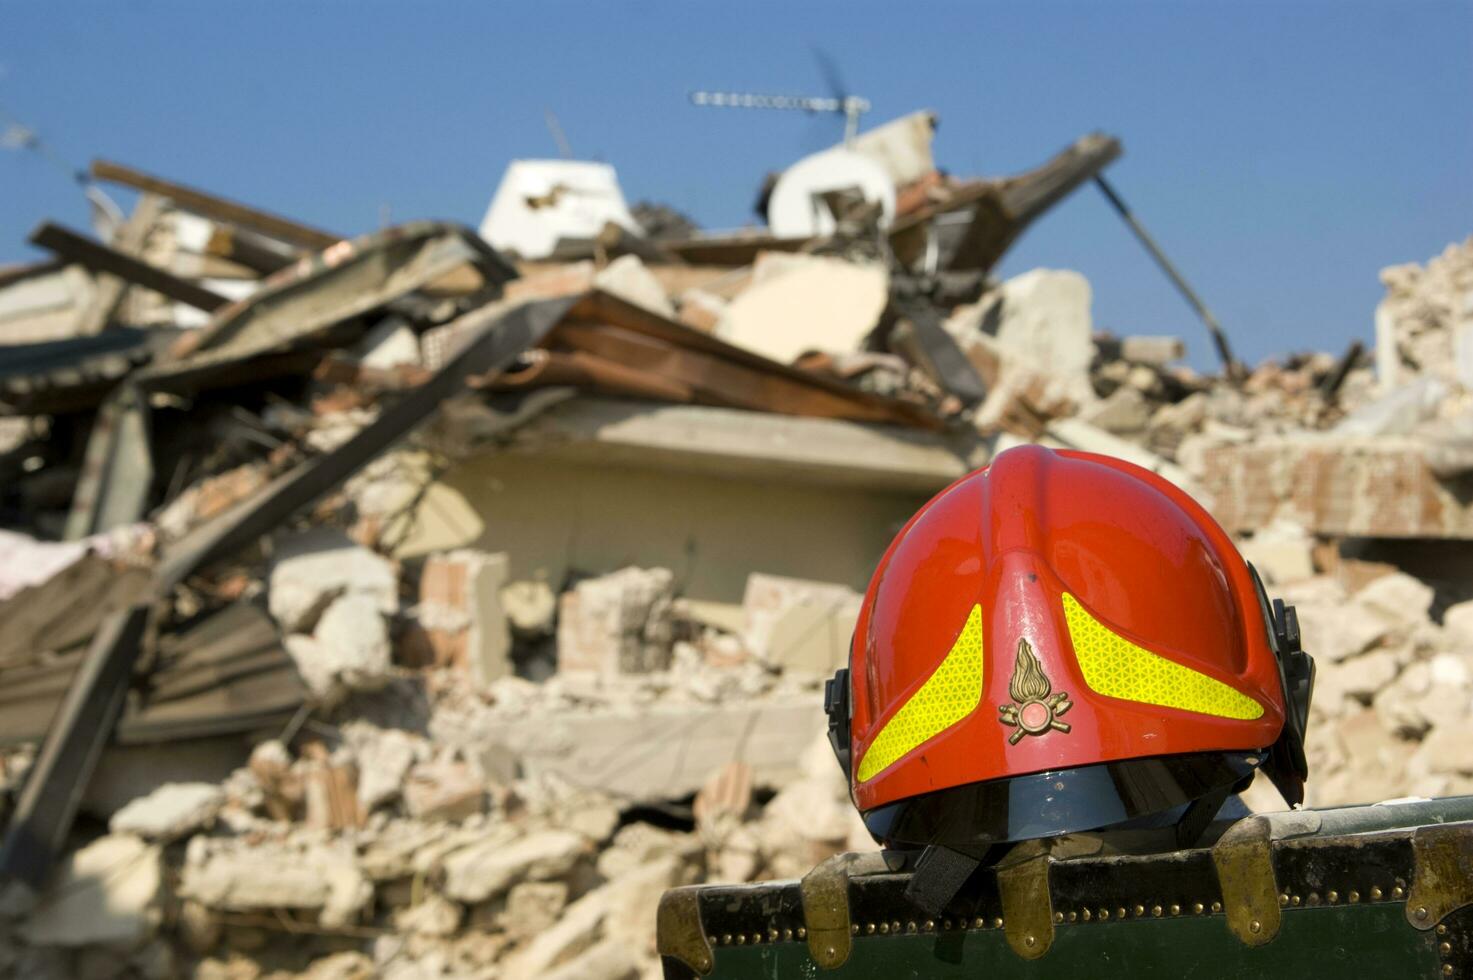 fotográfico documentación de el devastador terremoto en central Italia foto